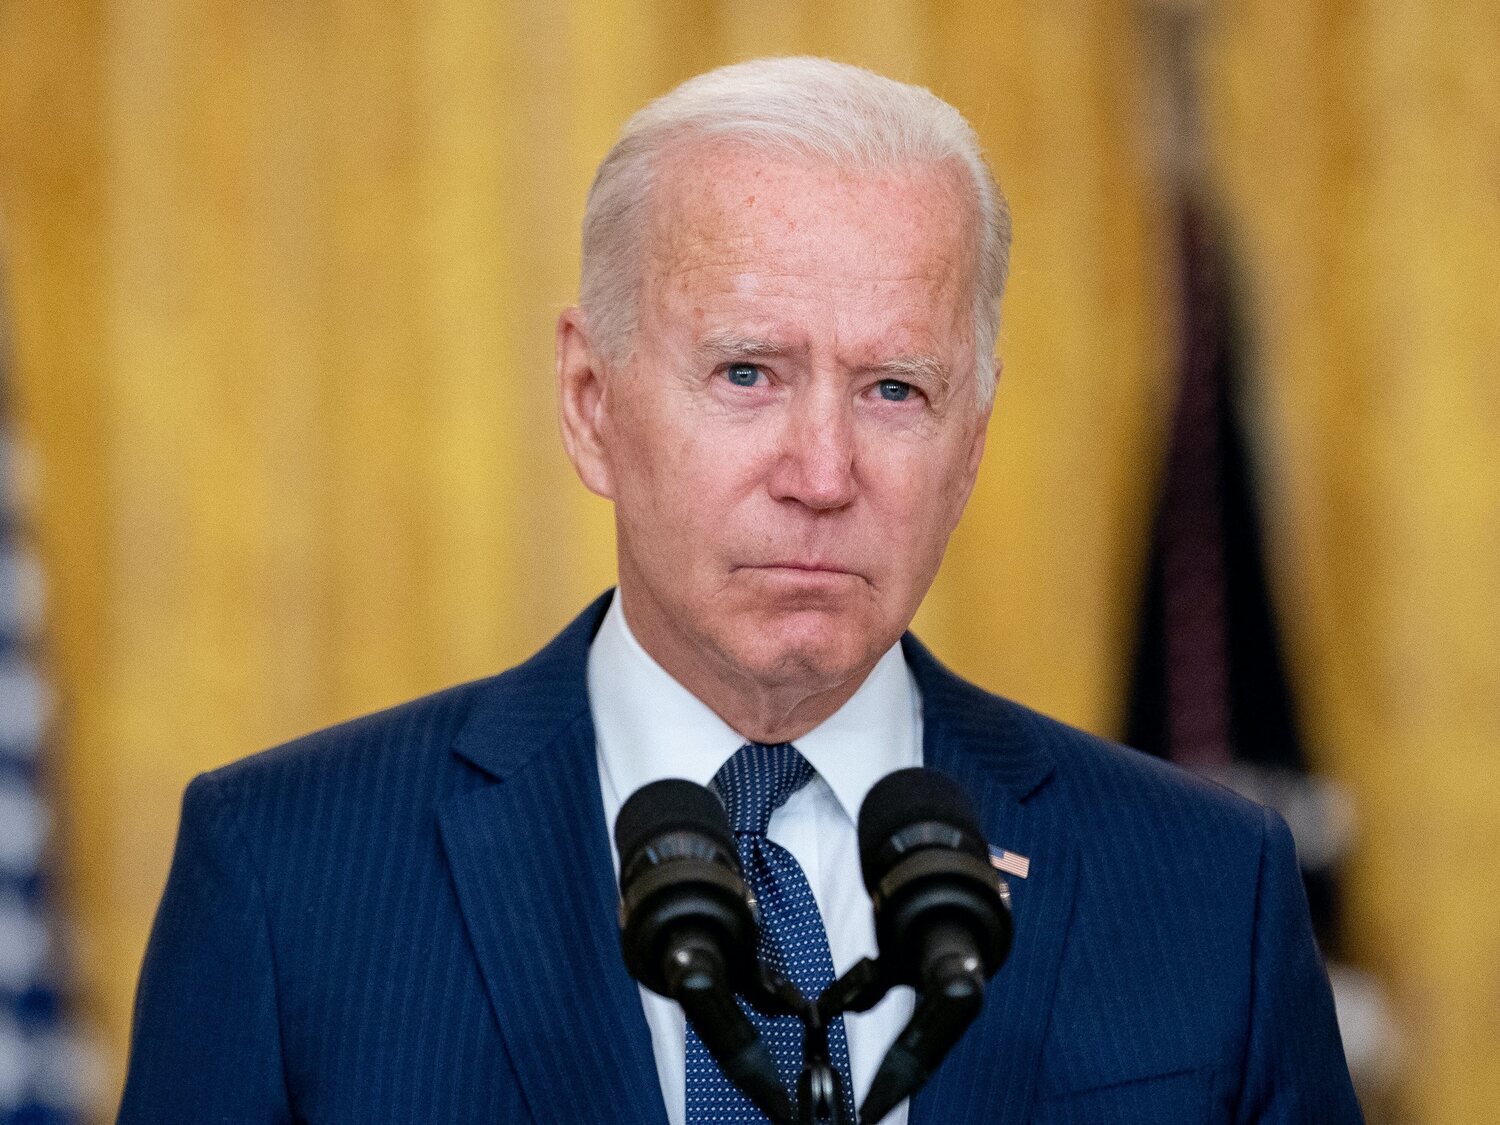 Biden advierte sobre otro posible atentado en Kabul, una posibilidad "altamente probable"